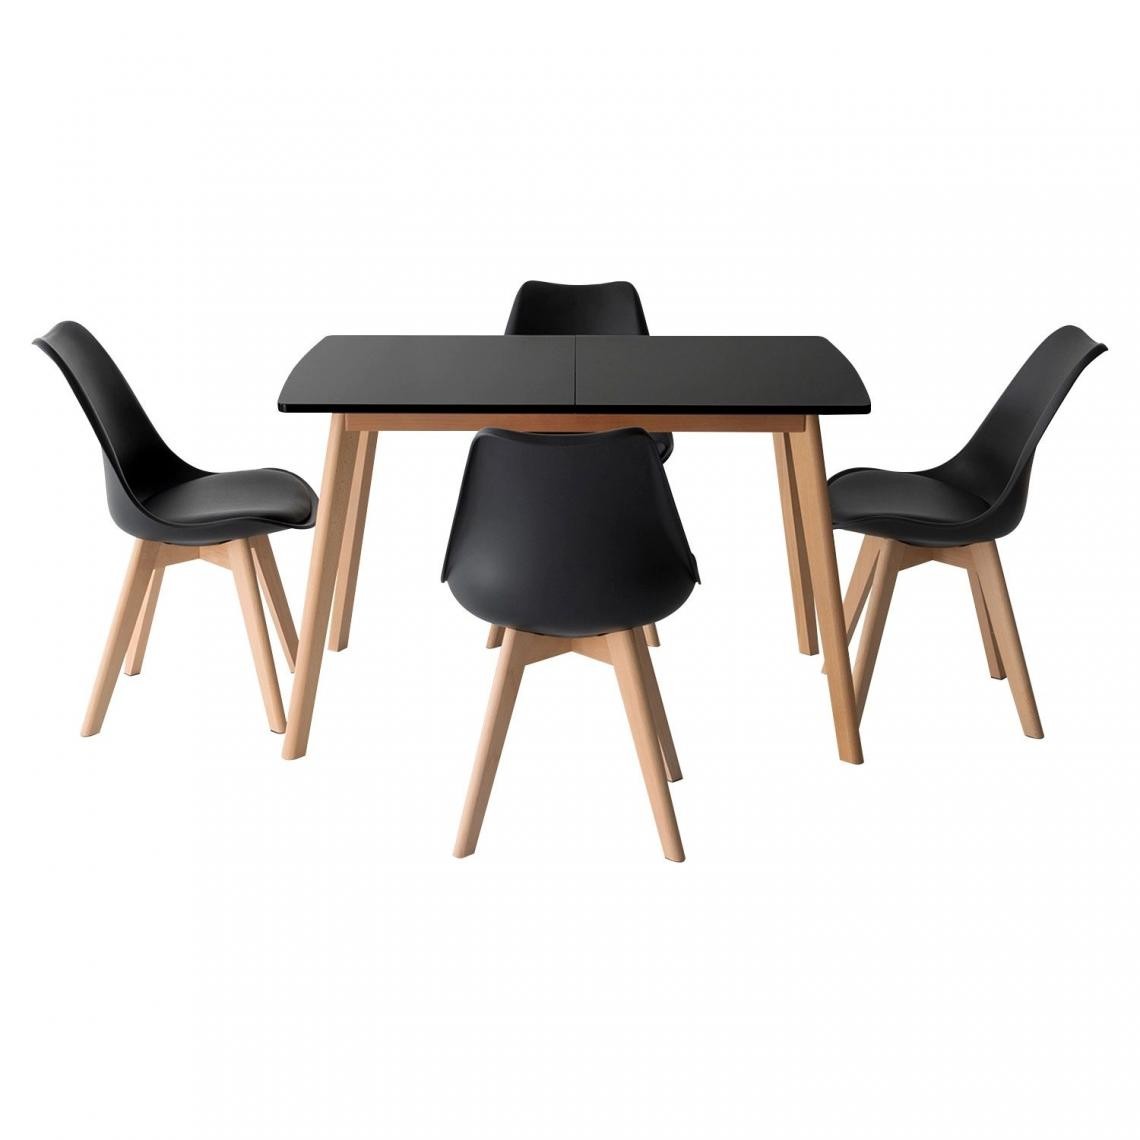 Beneffito - SENJA - Ensemble Table Extensible 120/160 cm et Chaises Scandinaves - NOIR - X4 Chaises - Tables à manger